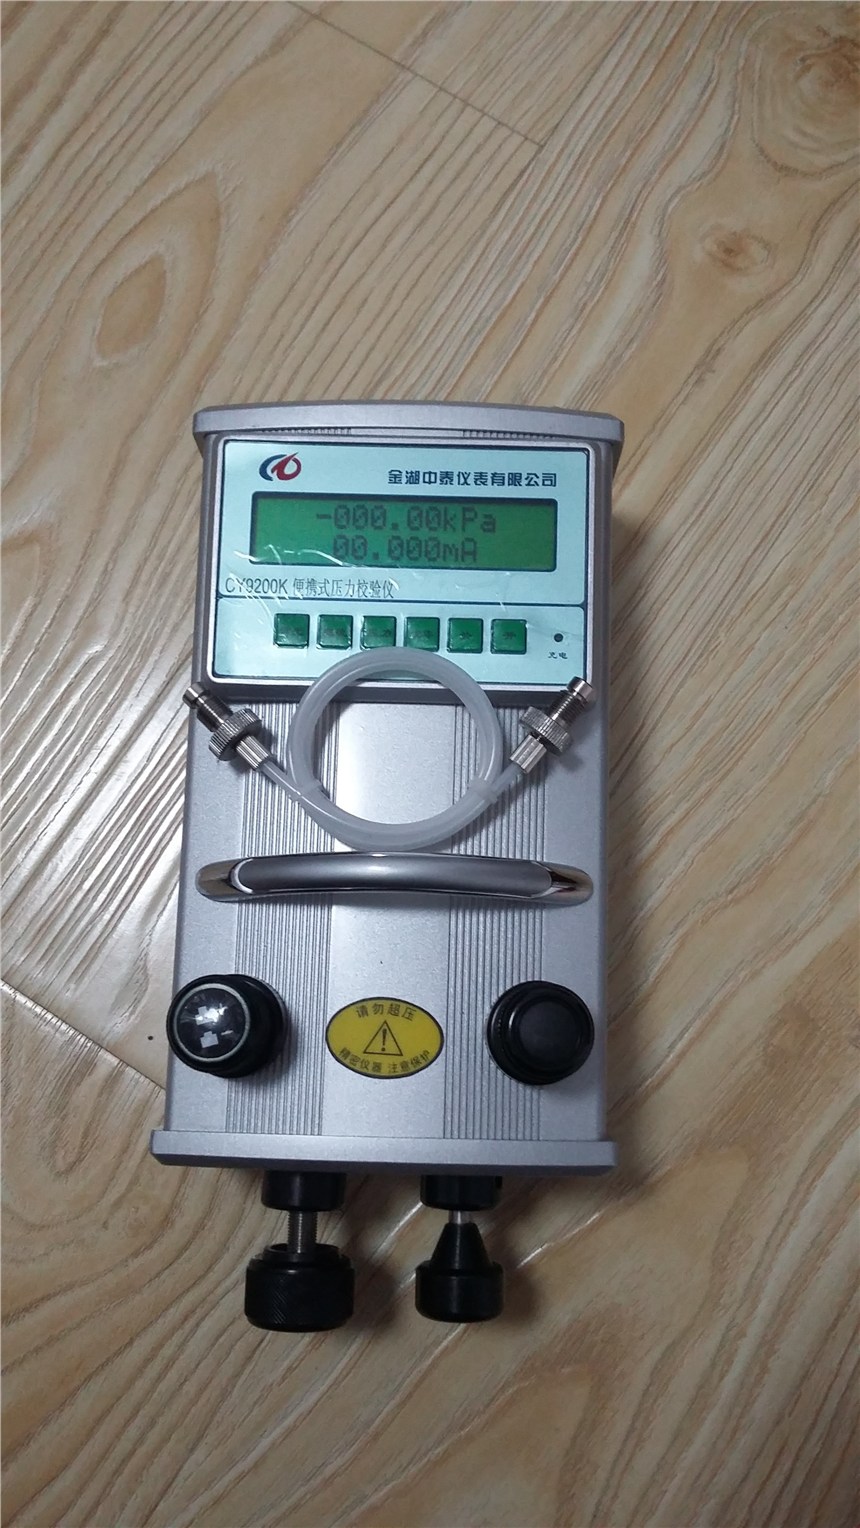 压力表校验仪-98kpa-60mpa,精度0.05級,内置压力源,便携式